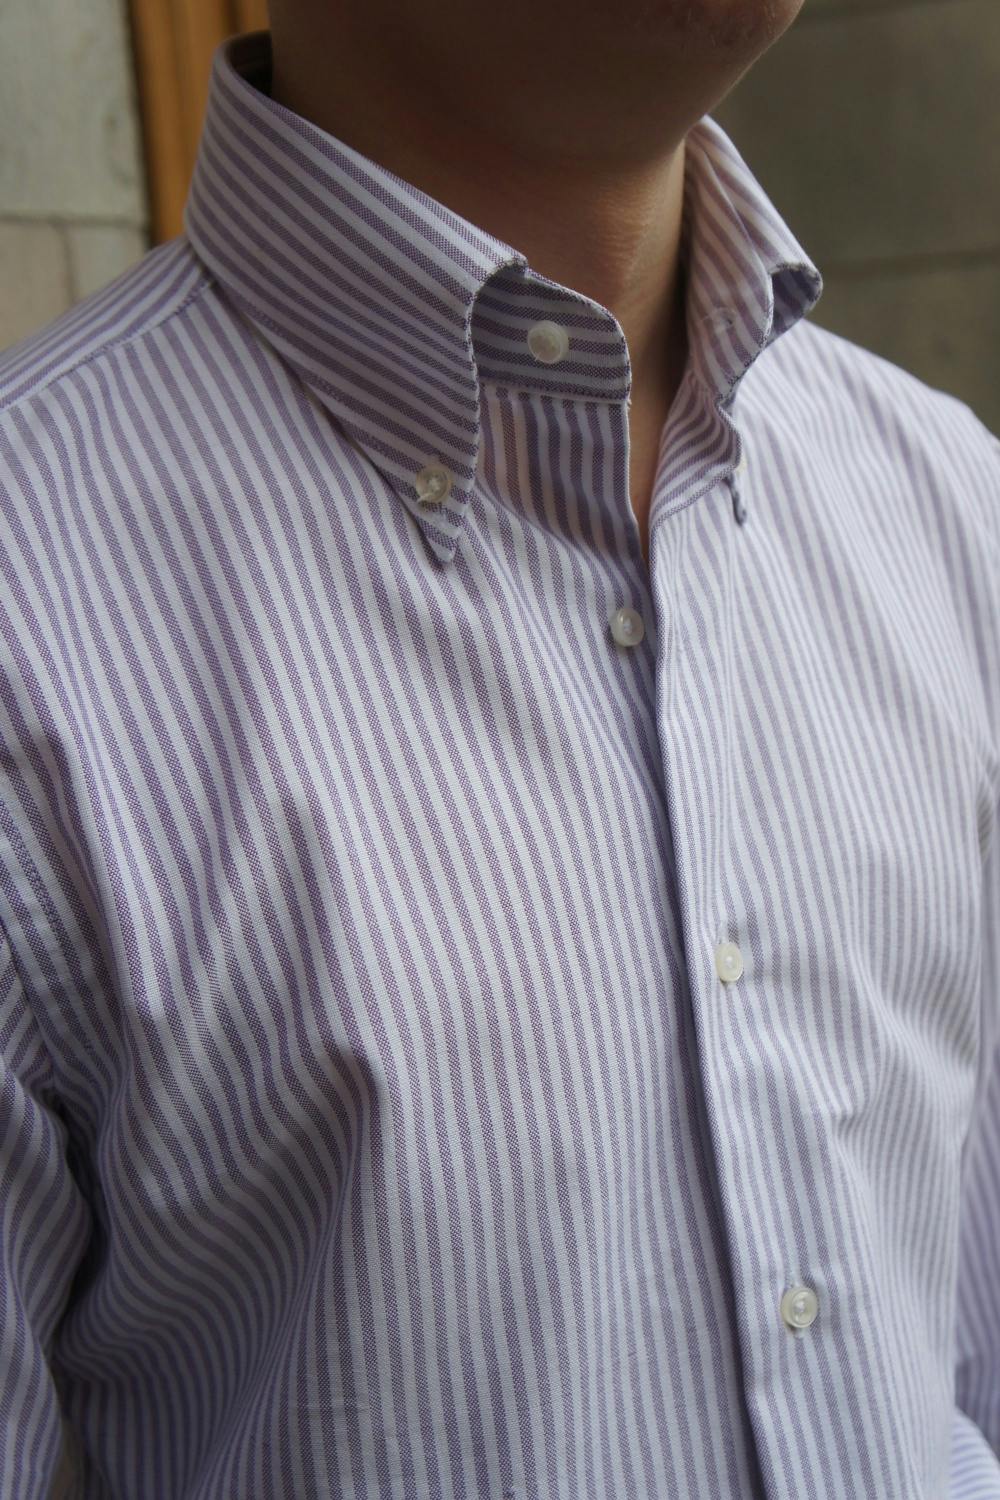 University Stripe Oxford Button Down Shirt - Purple/White